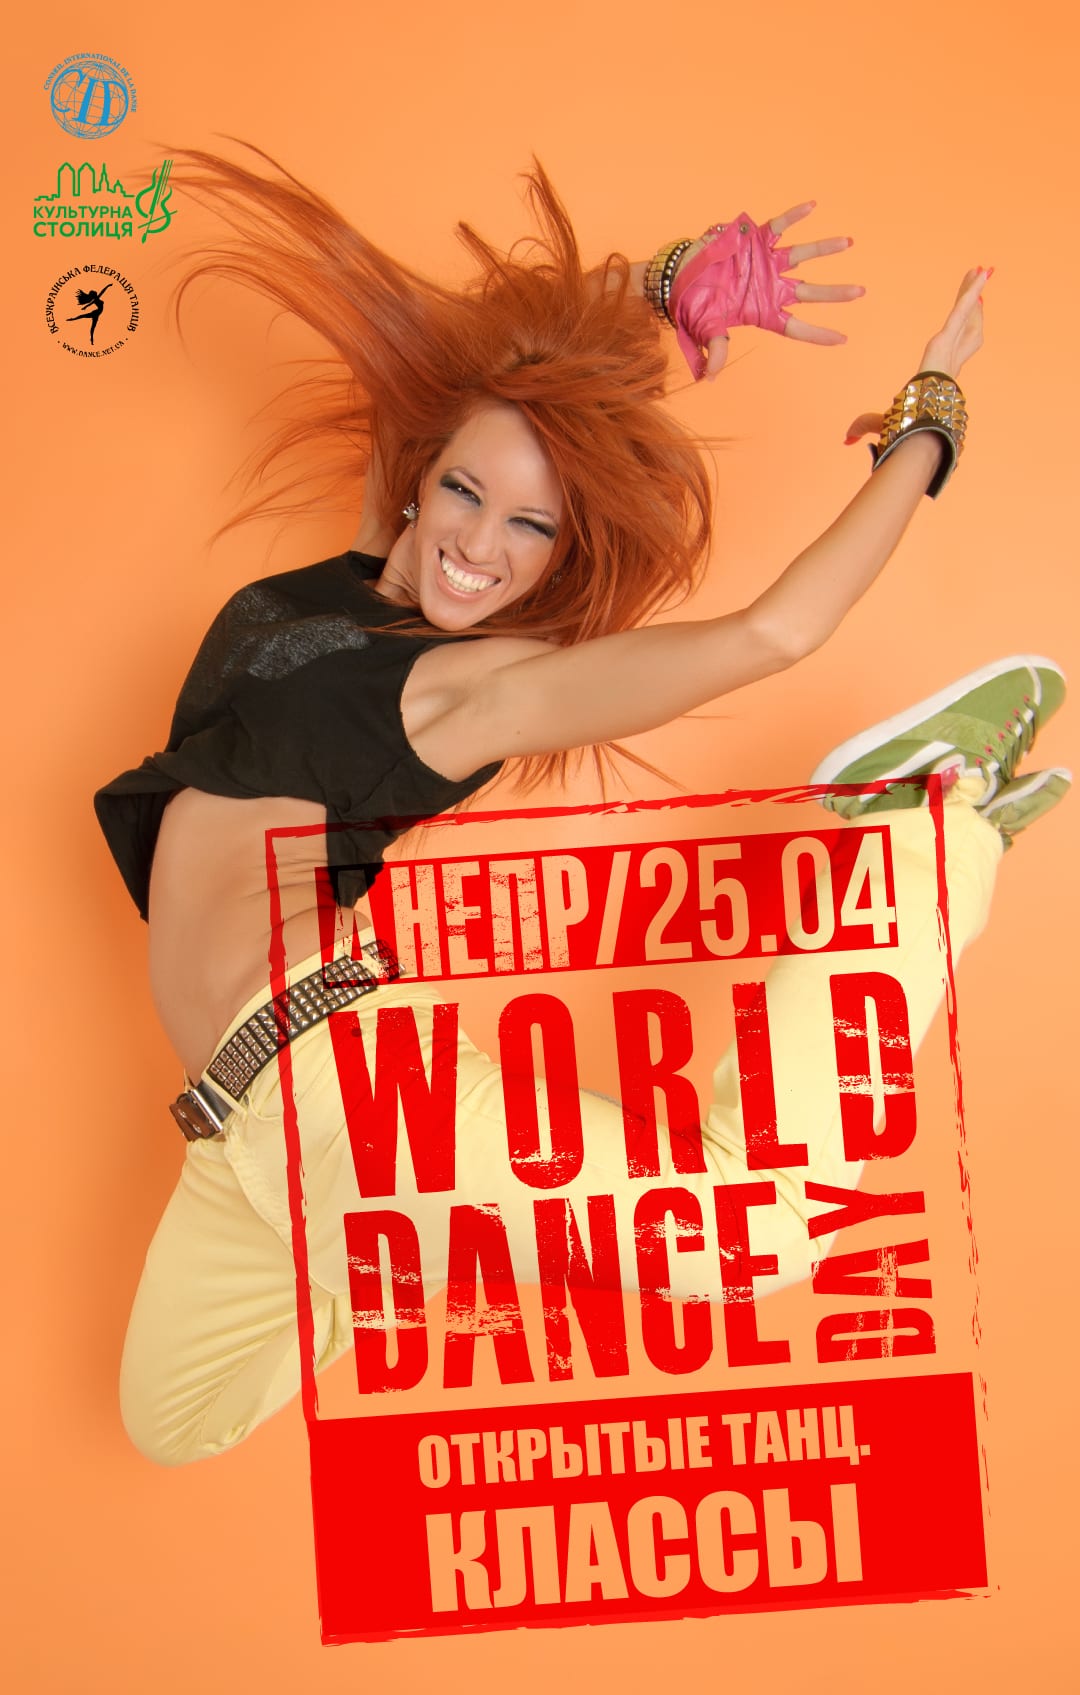 World Dance Day мастер-классы Днепр, 25.04.2019, цена, даты. Афиша Днепра